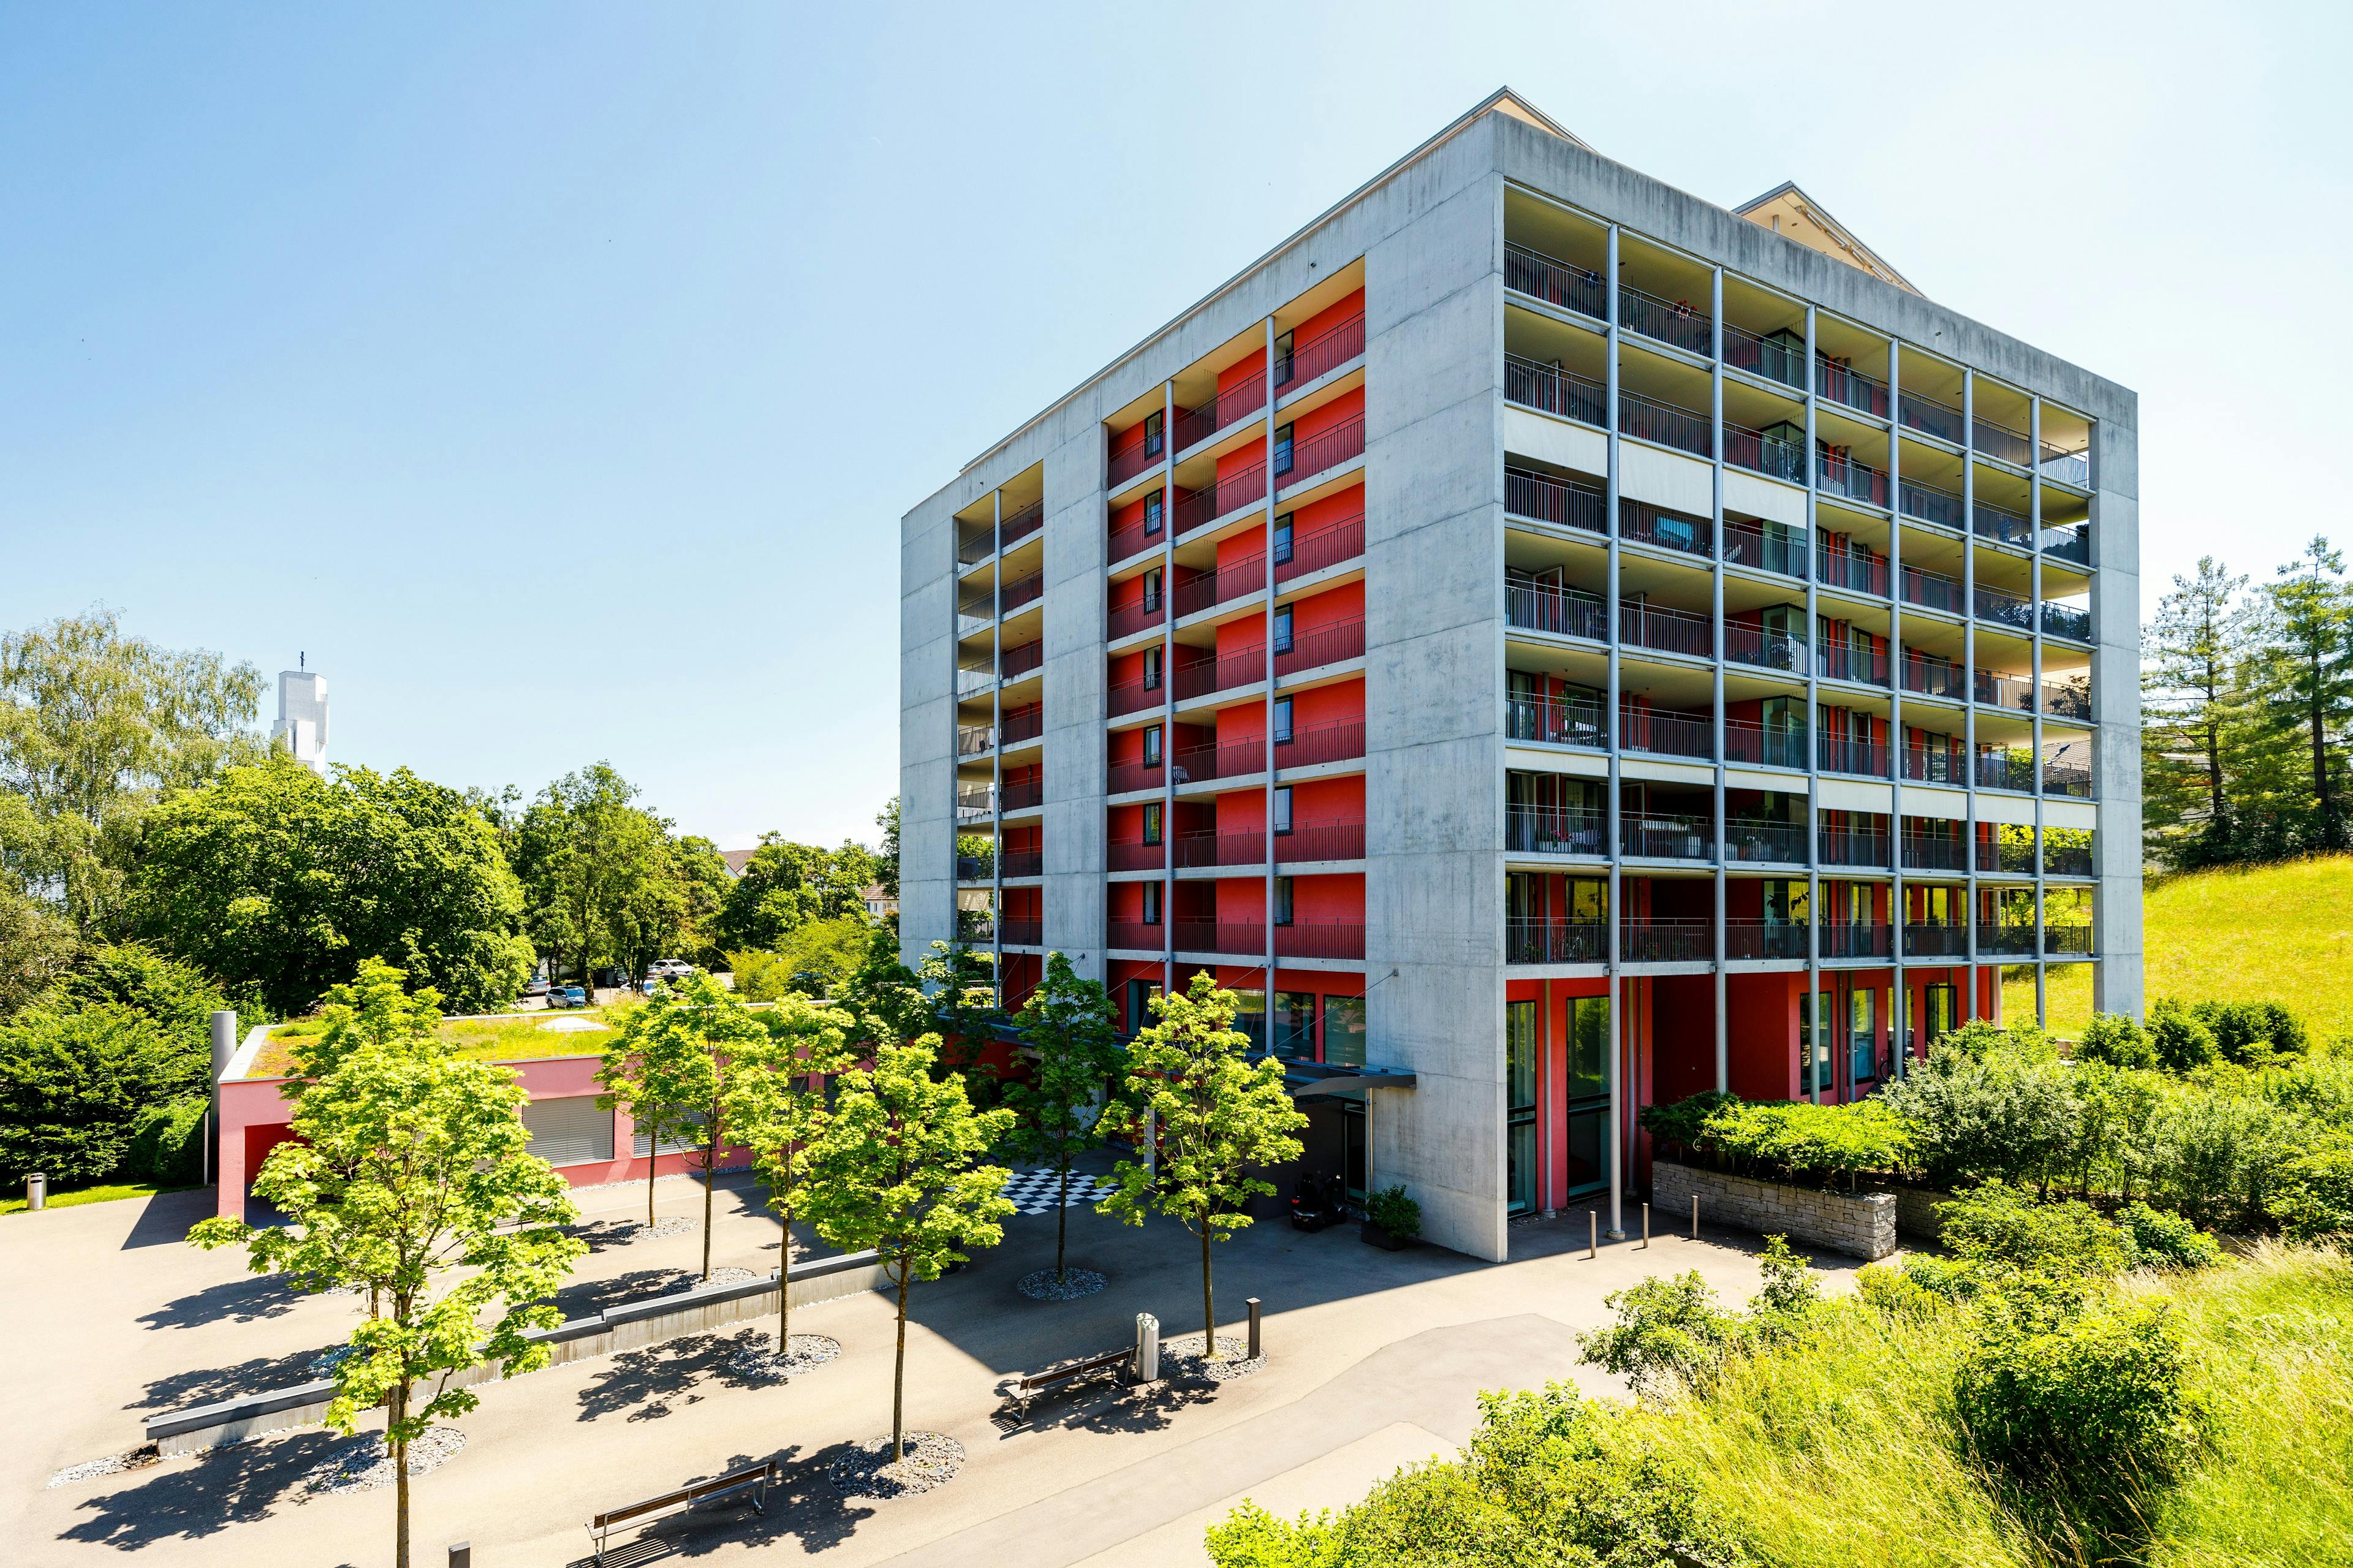 Modernes Wohngebäude mit roten Balkonen und viel Grünfläche.